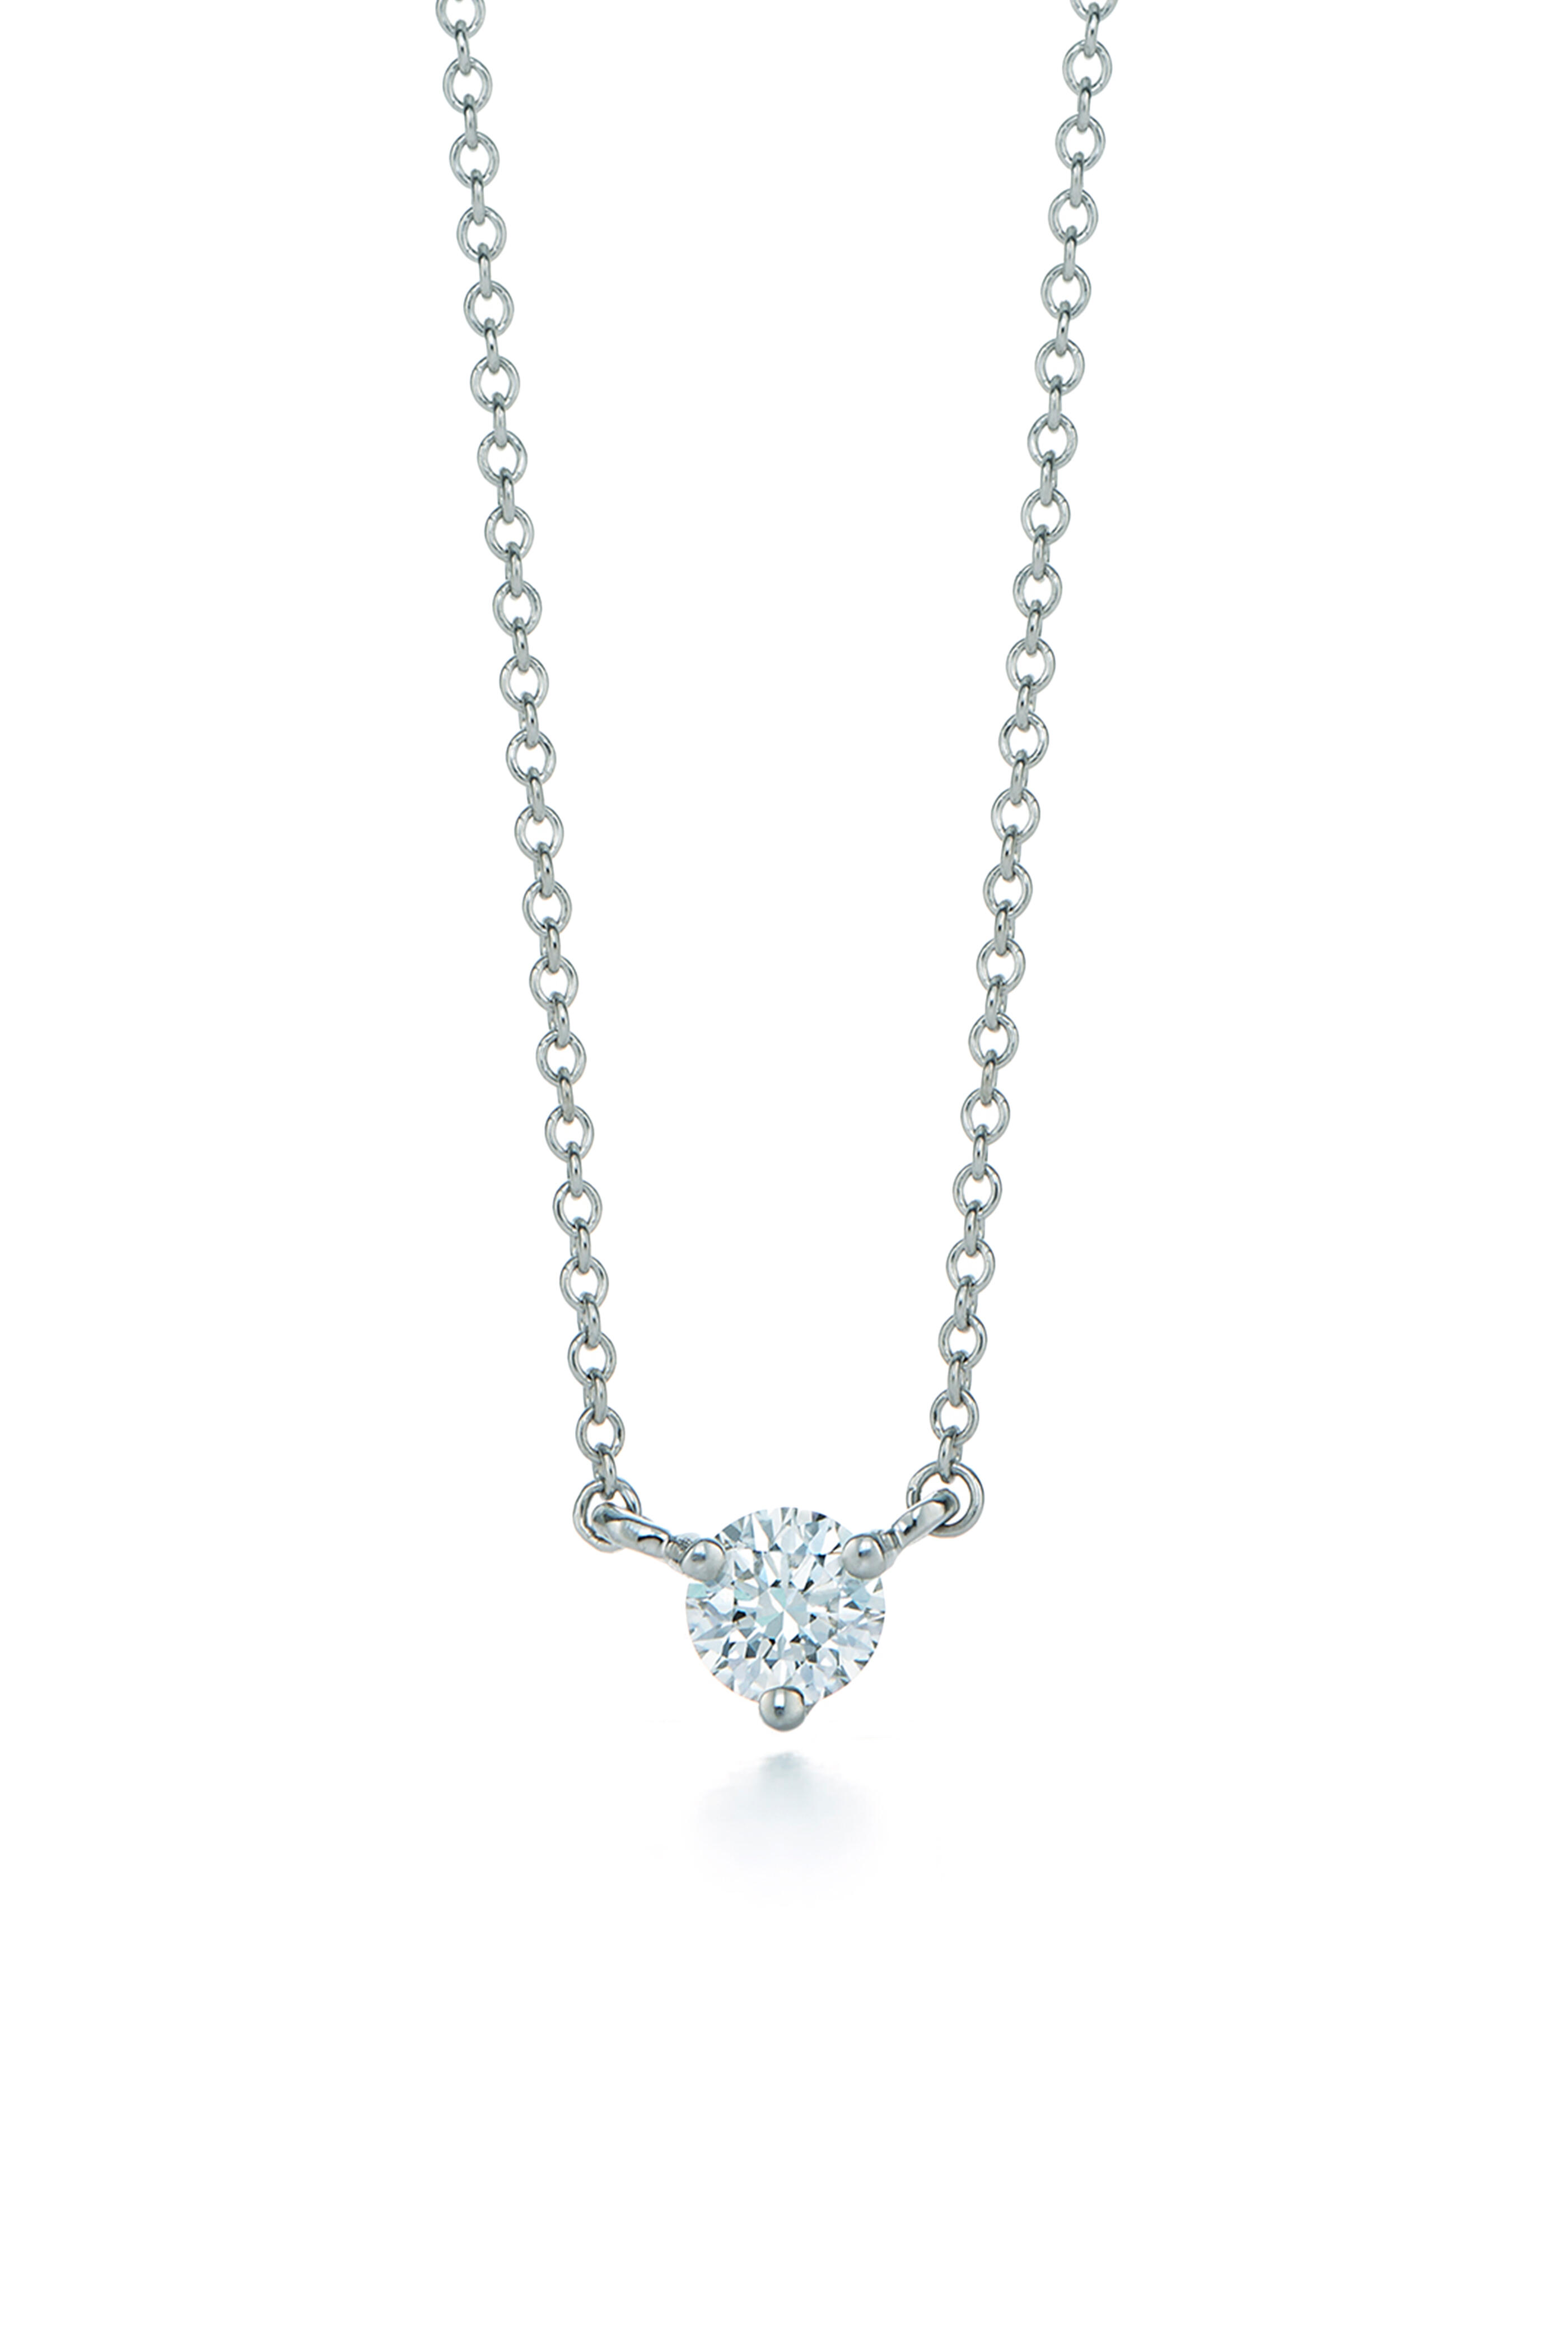 Classic platinum diamond necklace